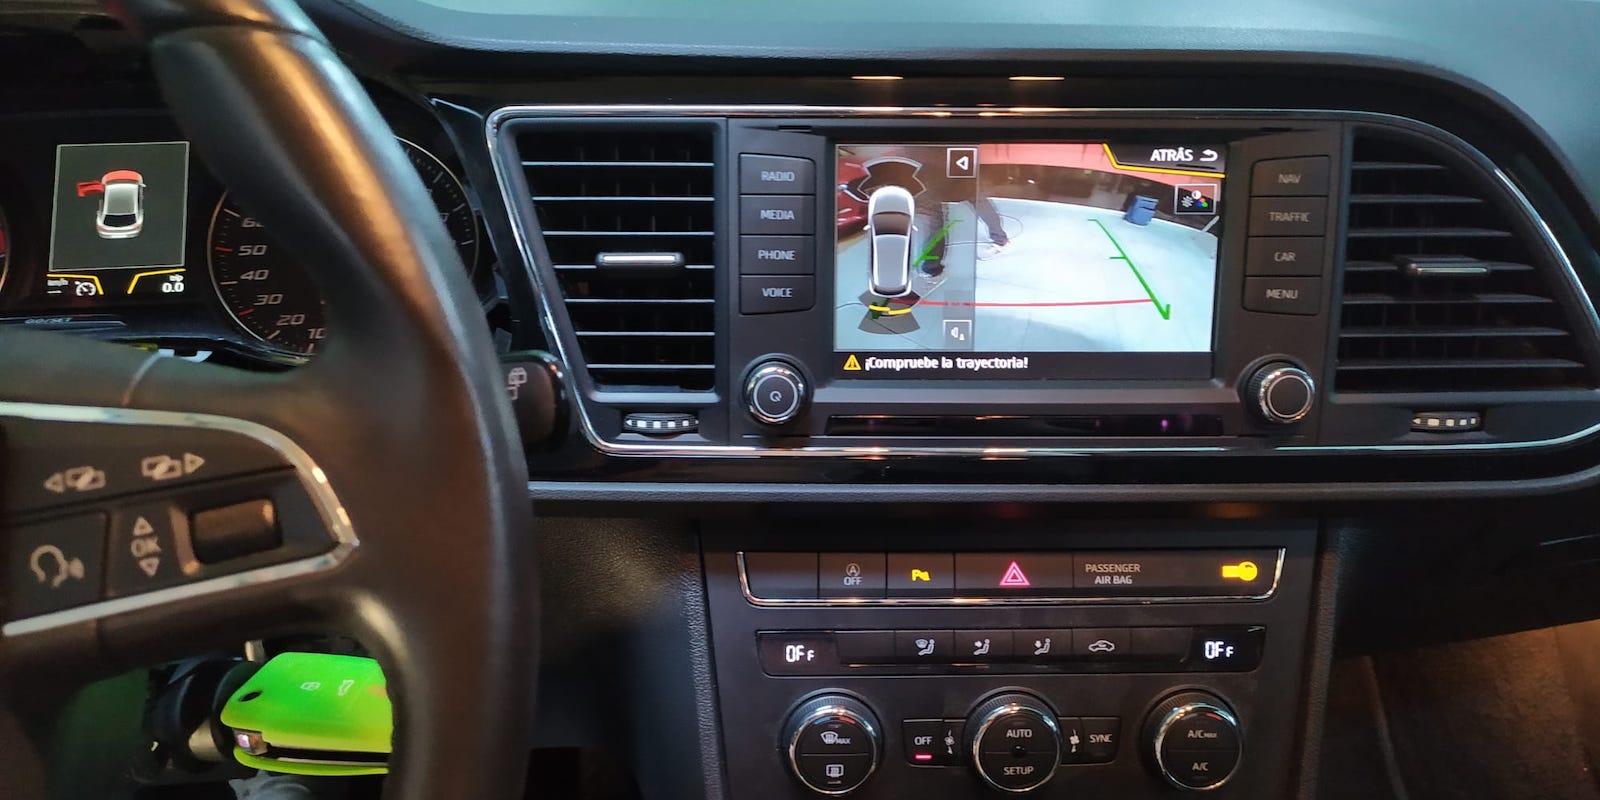 Seat León: Sensores de Parking y cámara trasera